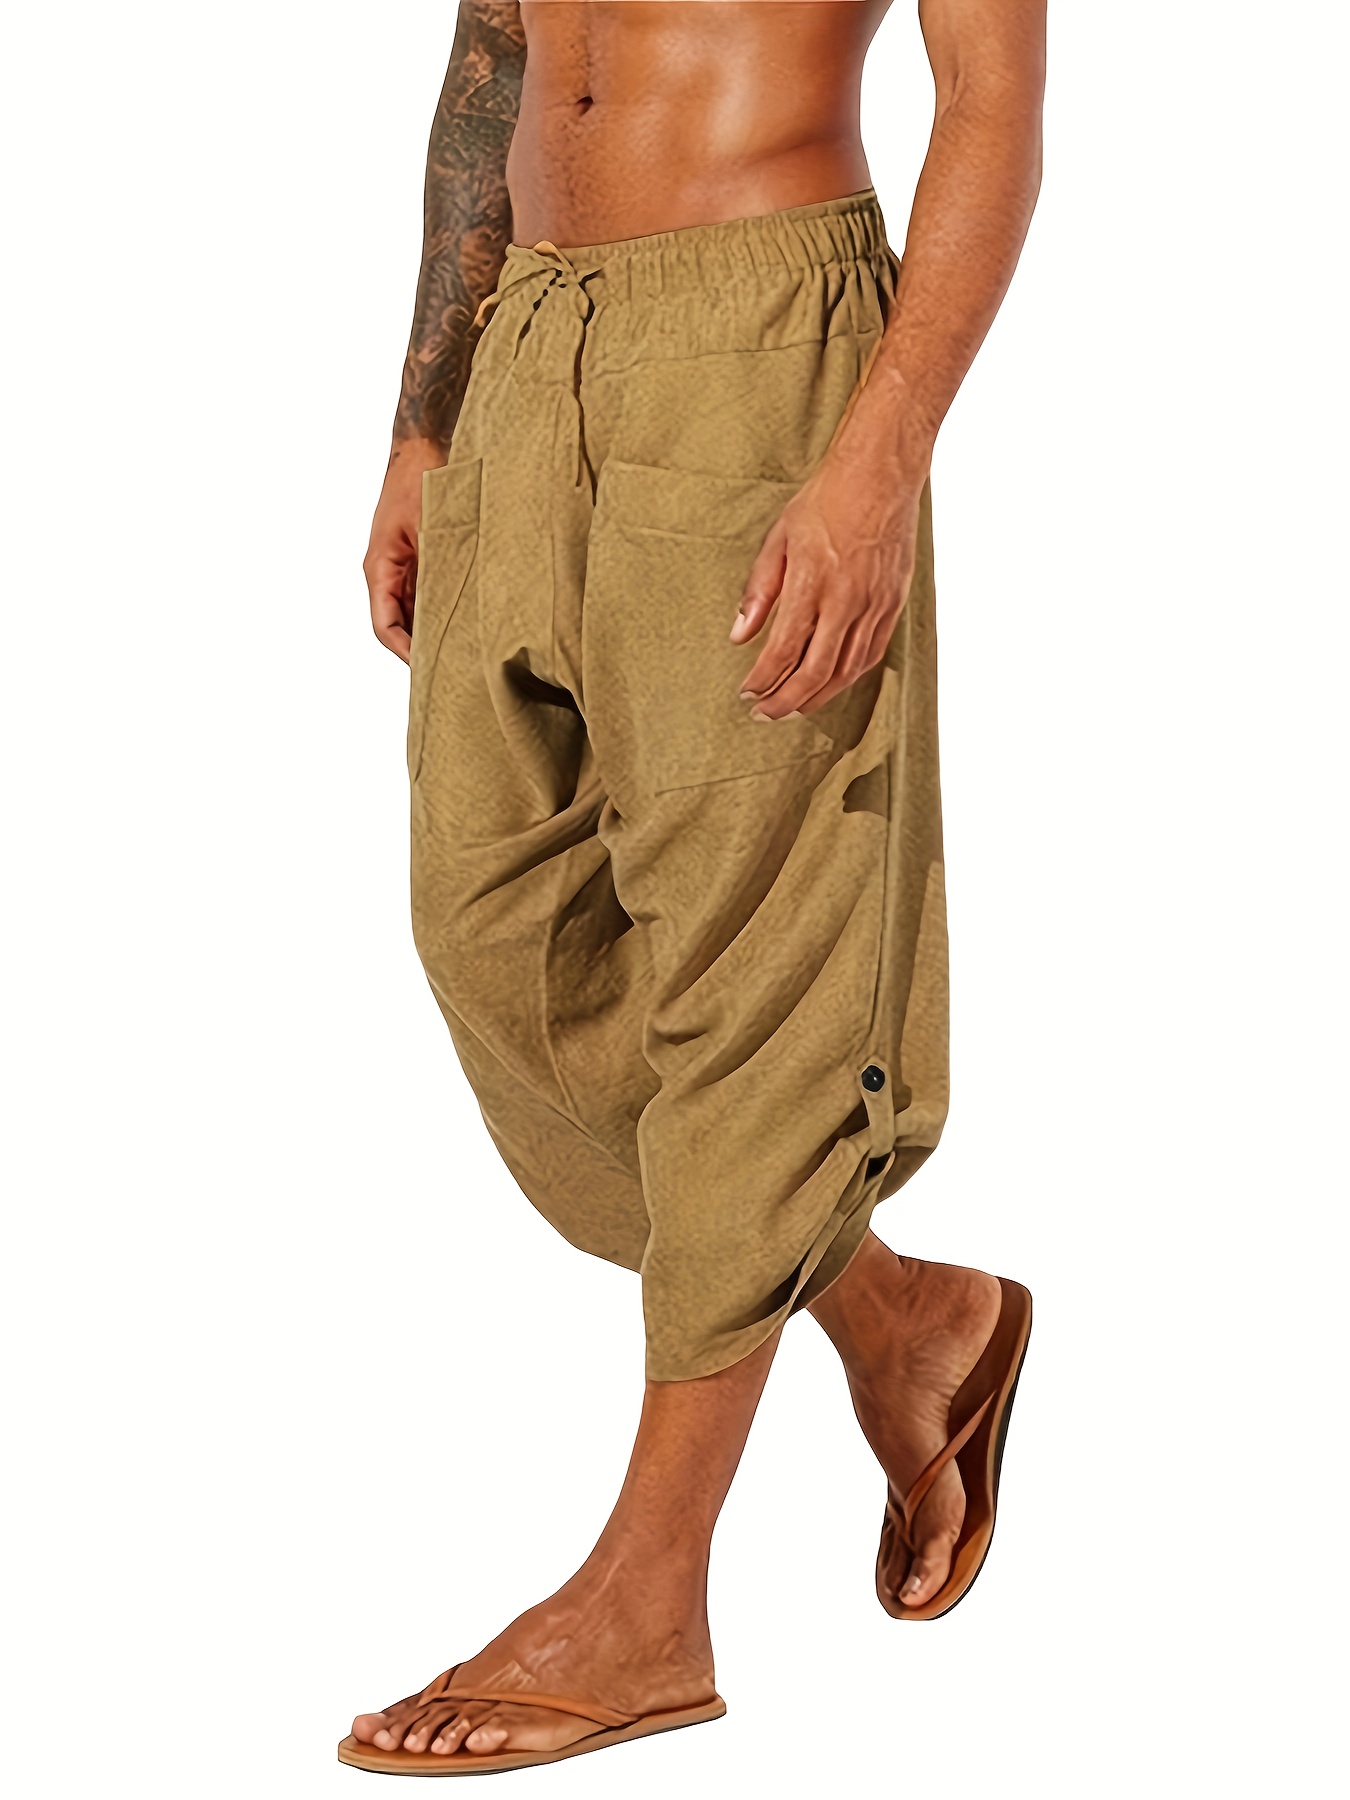 Summer Women's Pants Cotton Linen Large Size Casual Loose Ankle-length  Capri Pants Drawstring Harem Pants Women…